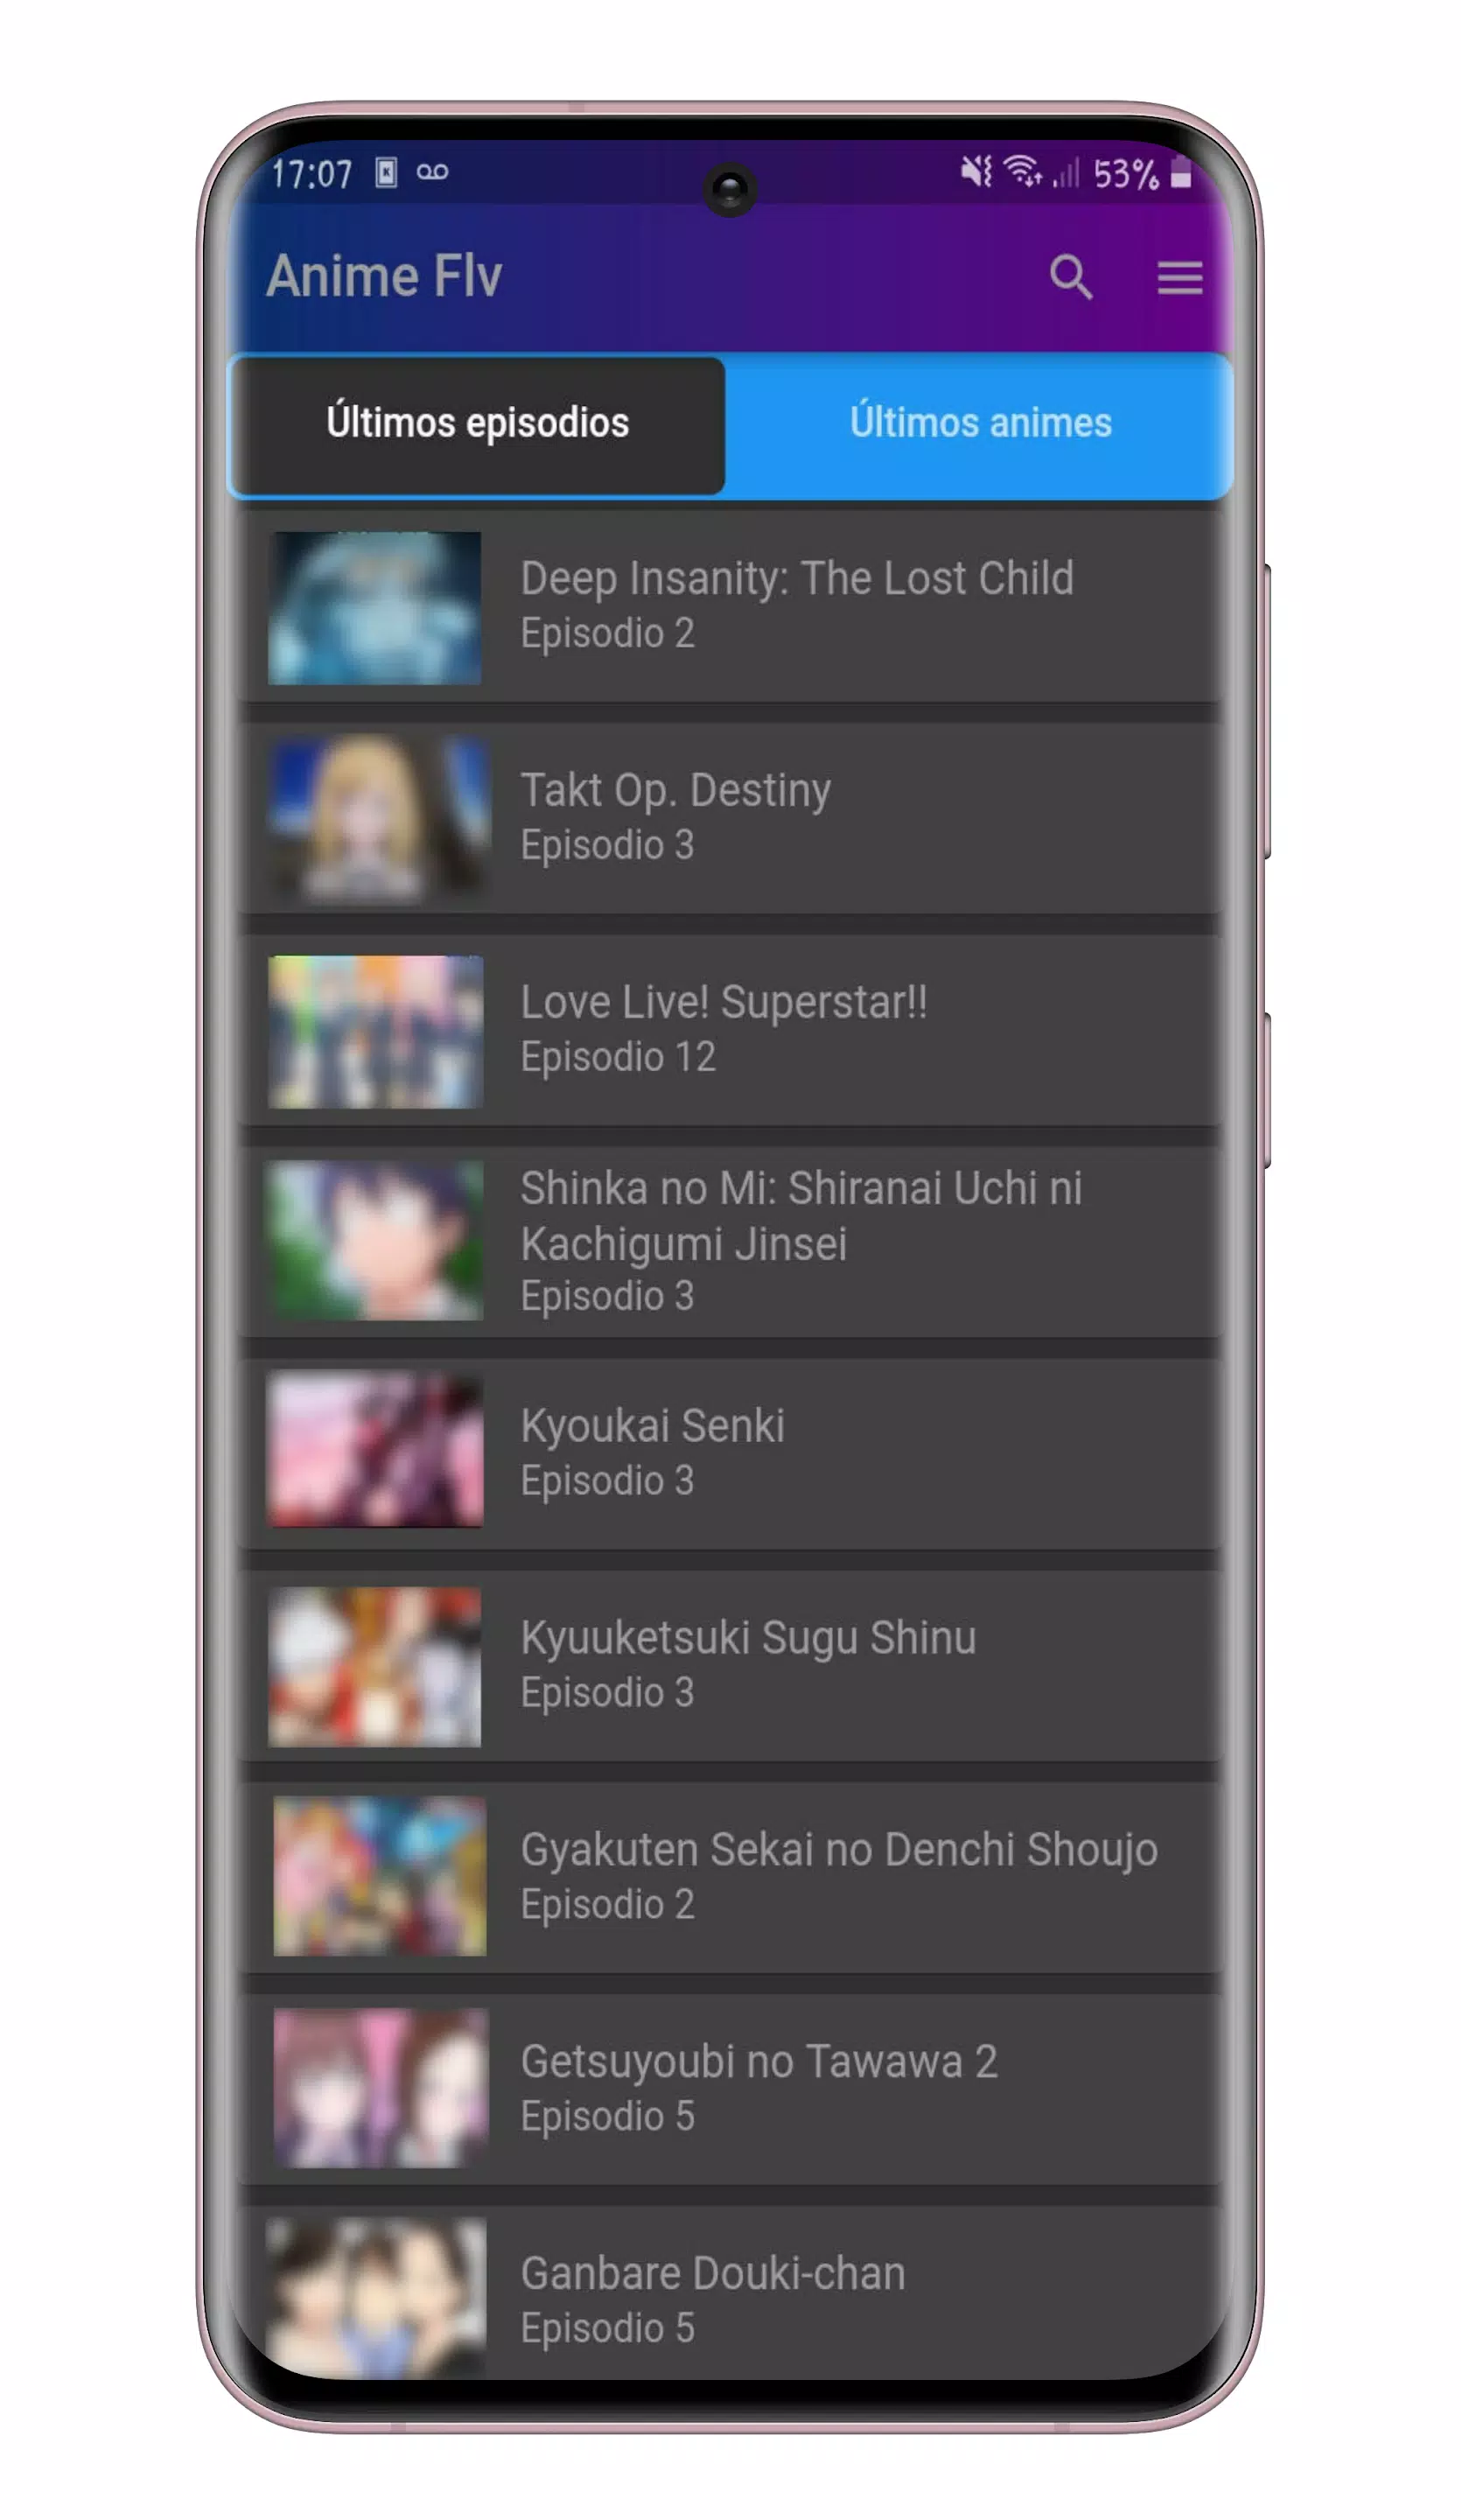 Animes Online Vision - Animes e Desenhos Online APK 2.2 for Android –  Download Animes Online Vision - Animes e Desenhos Online APK Latest Version  from